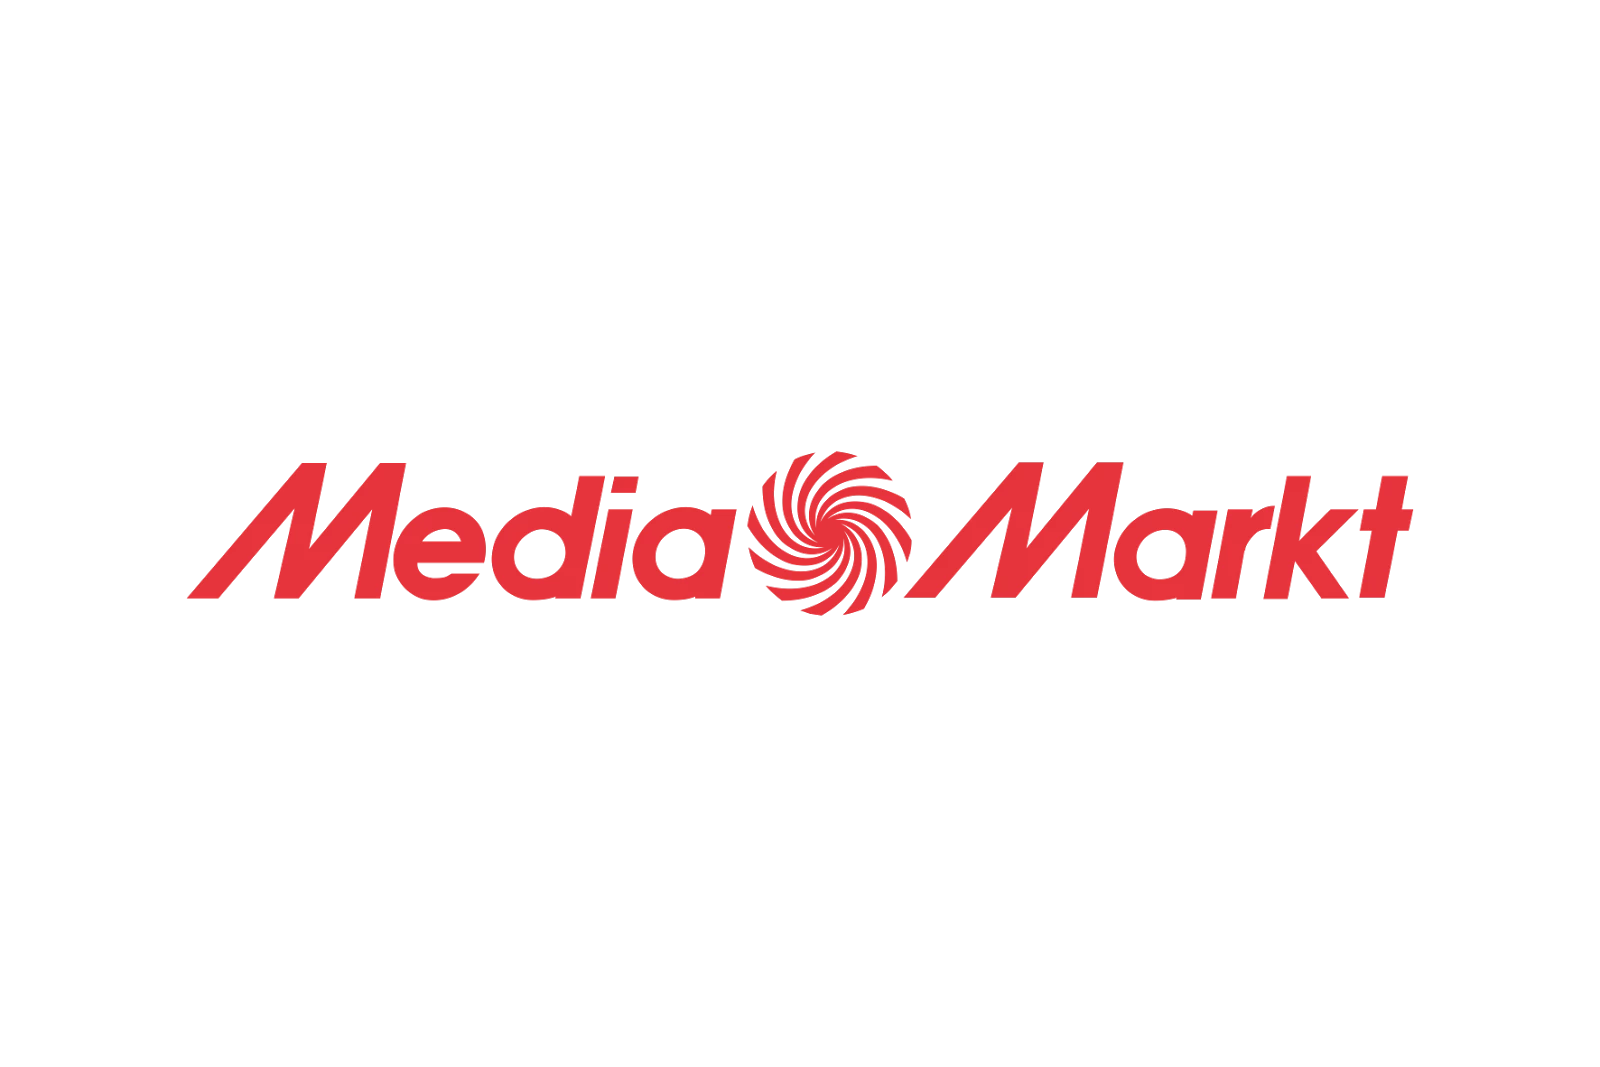 Rode logo van de Mediamarkt.